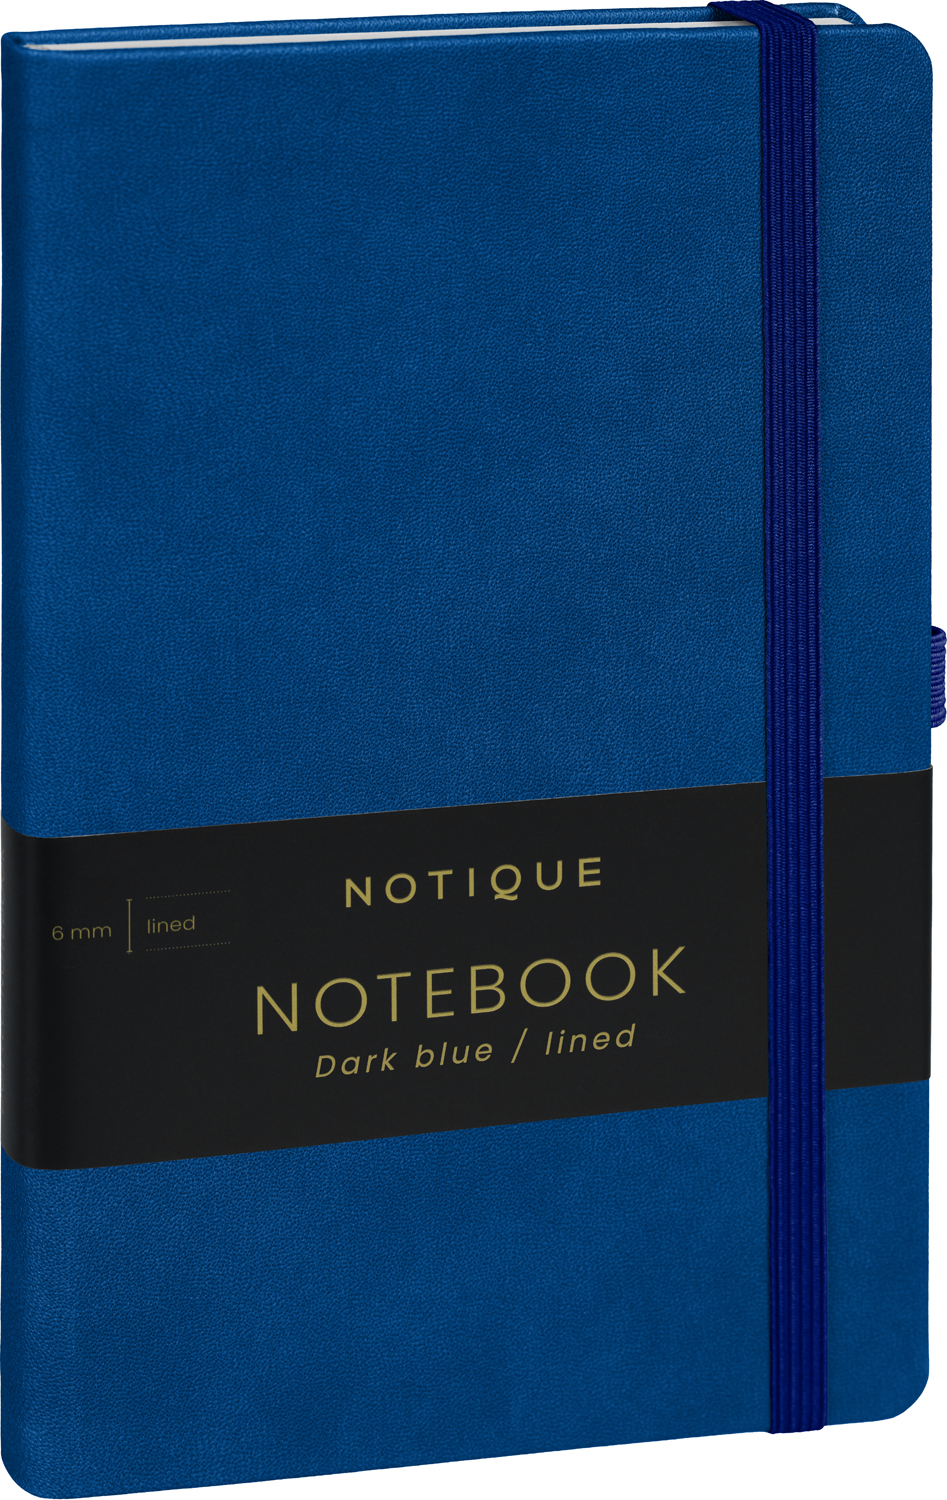 Linkovaný zápisník Tmavě modrý, 13x21 cm